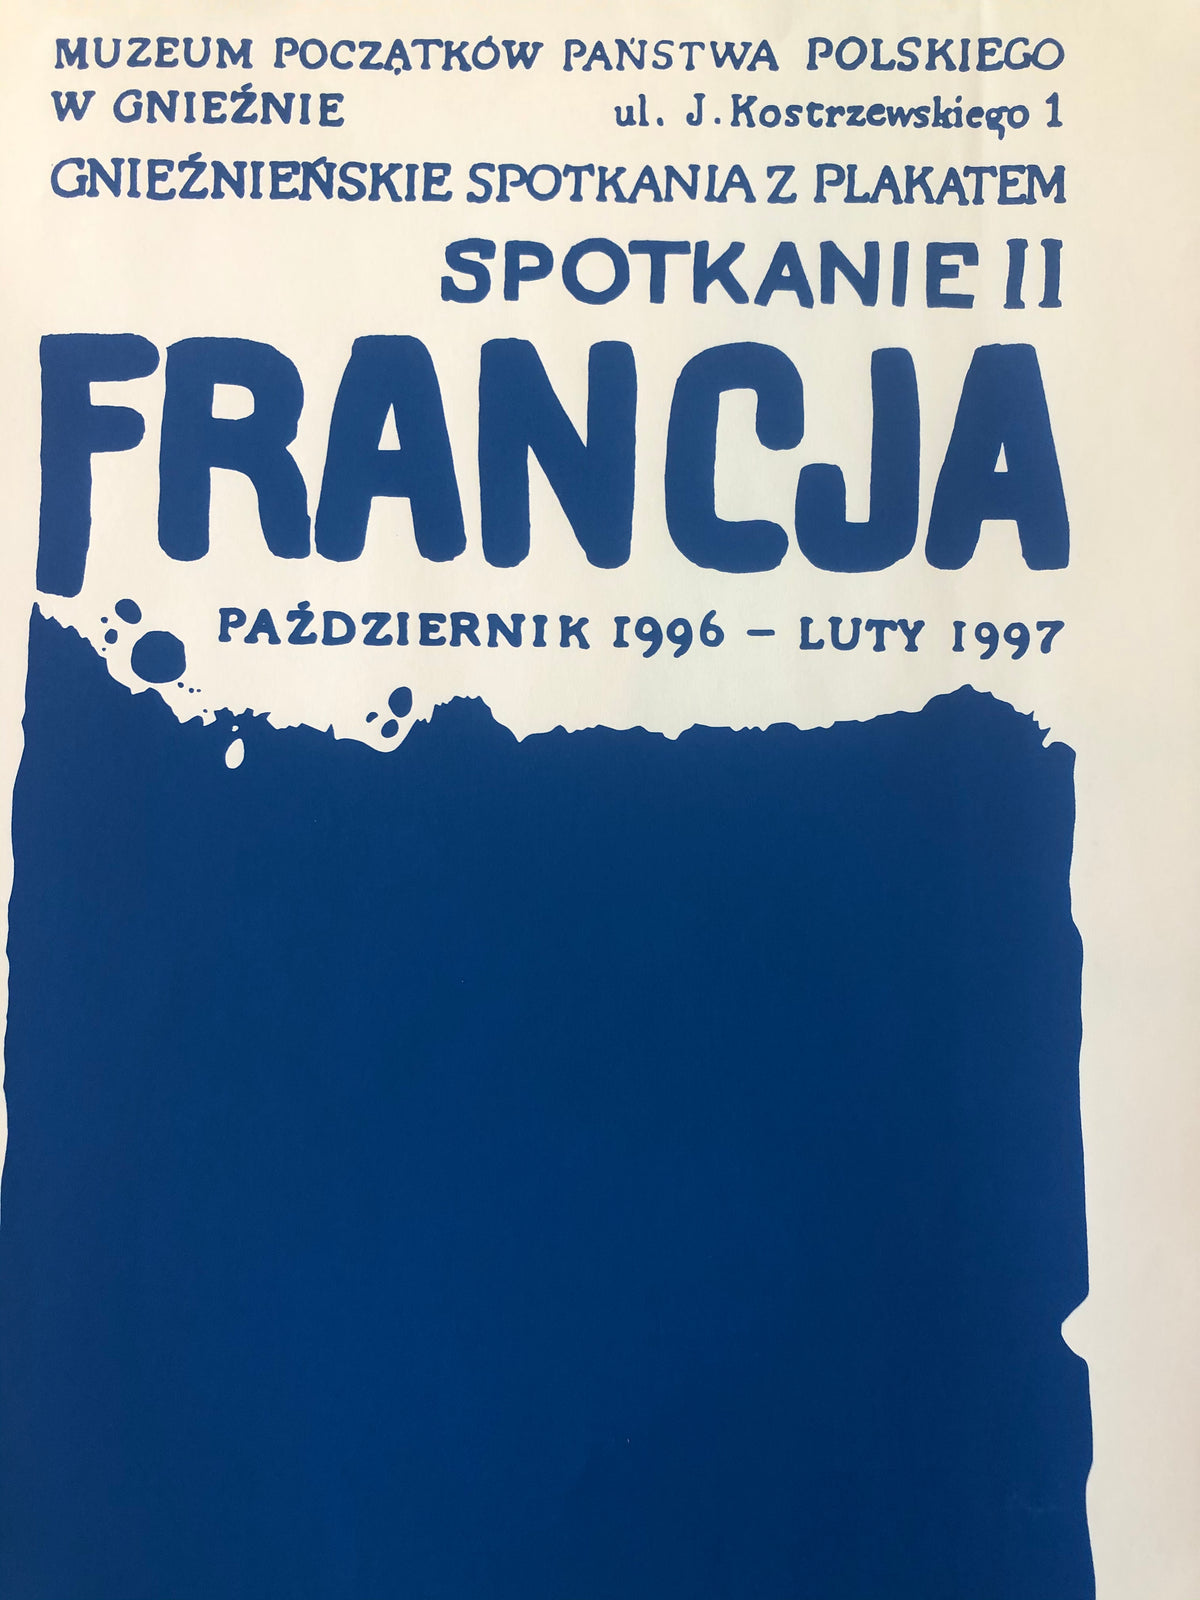 Francja Plakat Polish Poster